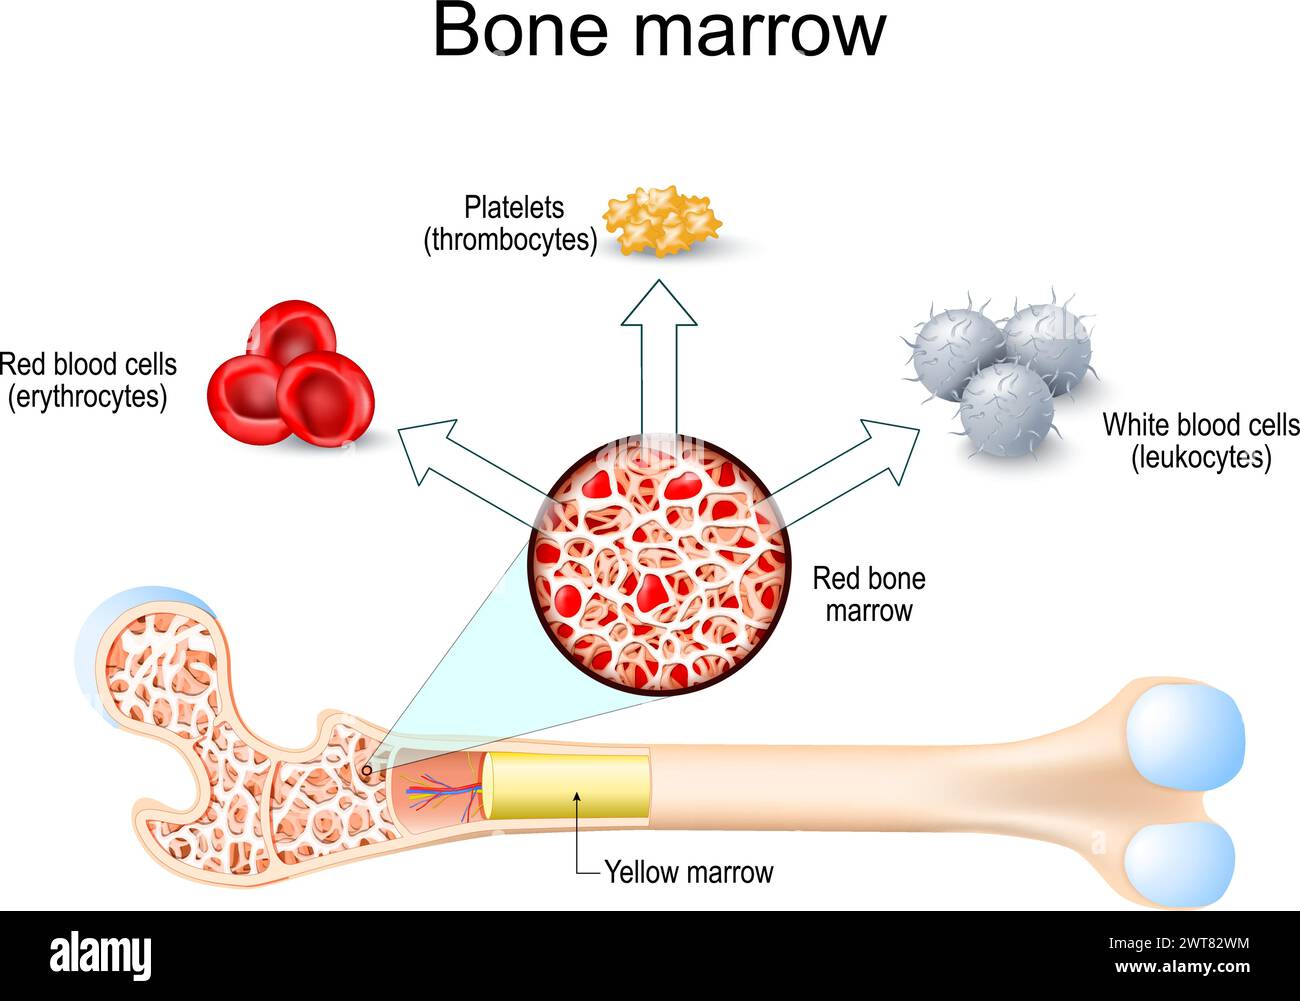 Rotes Knochenmark und gelbes Knochenmark. Hämatopoese. Thrombozyten Thrombozyten, weiße Blutkörperchen oder Leukozyten, Erythrozyten oder Erythrozyten. Vektor krank Stock Vektor